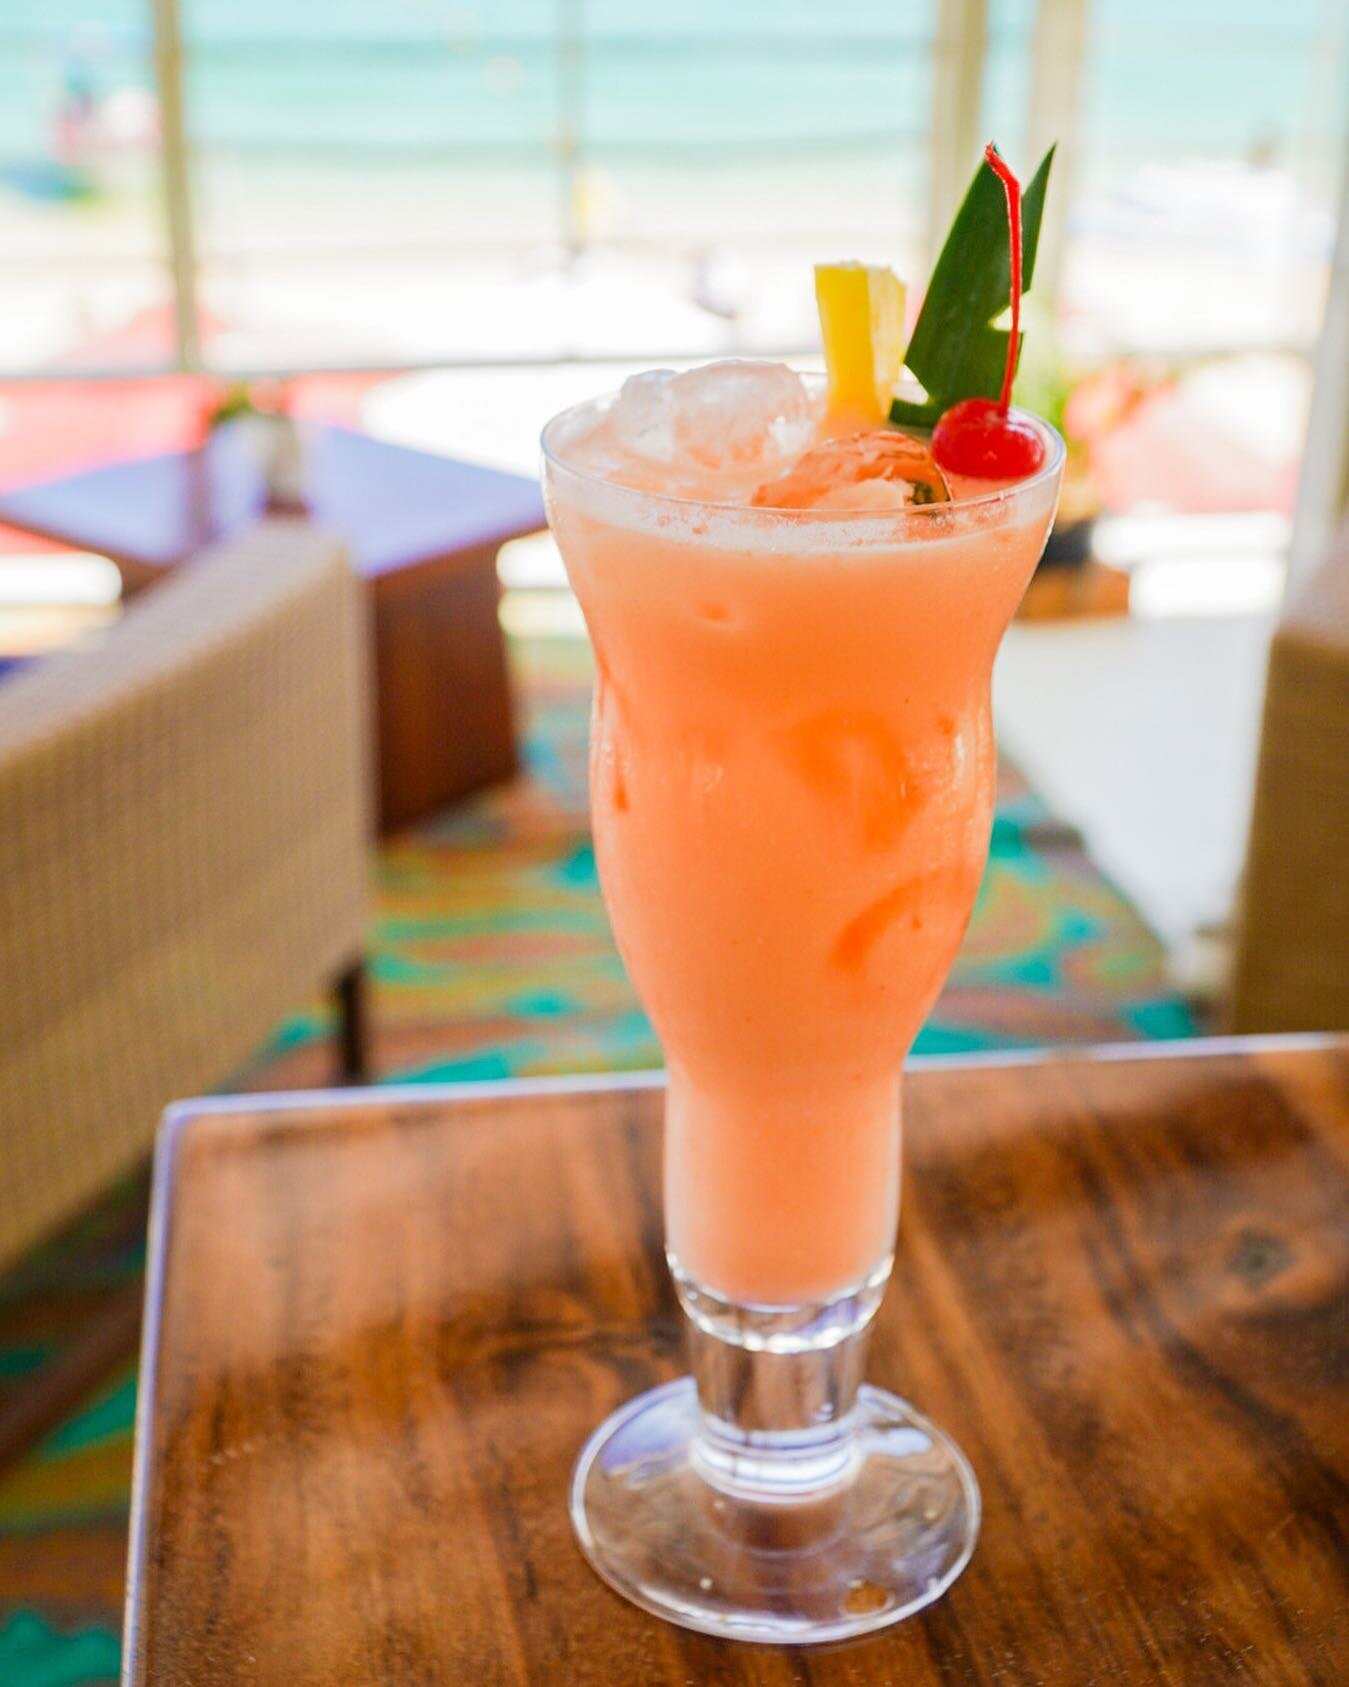 Unos buenos drinks por la morning en la beach 🌴☀️ #CaboLife 

#cabo #loscabos #medanobeach #beachlife #seavibes #cocktailsofinstagram #cabococktails #cocktailart #bartenderlife